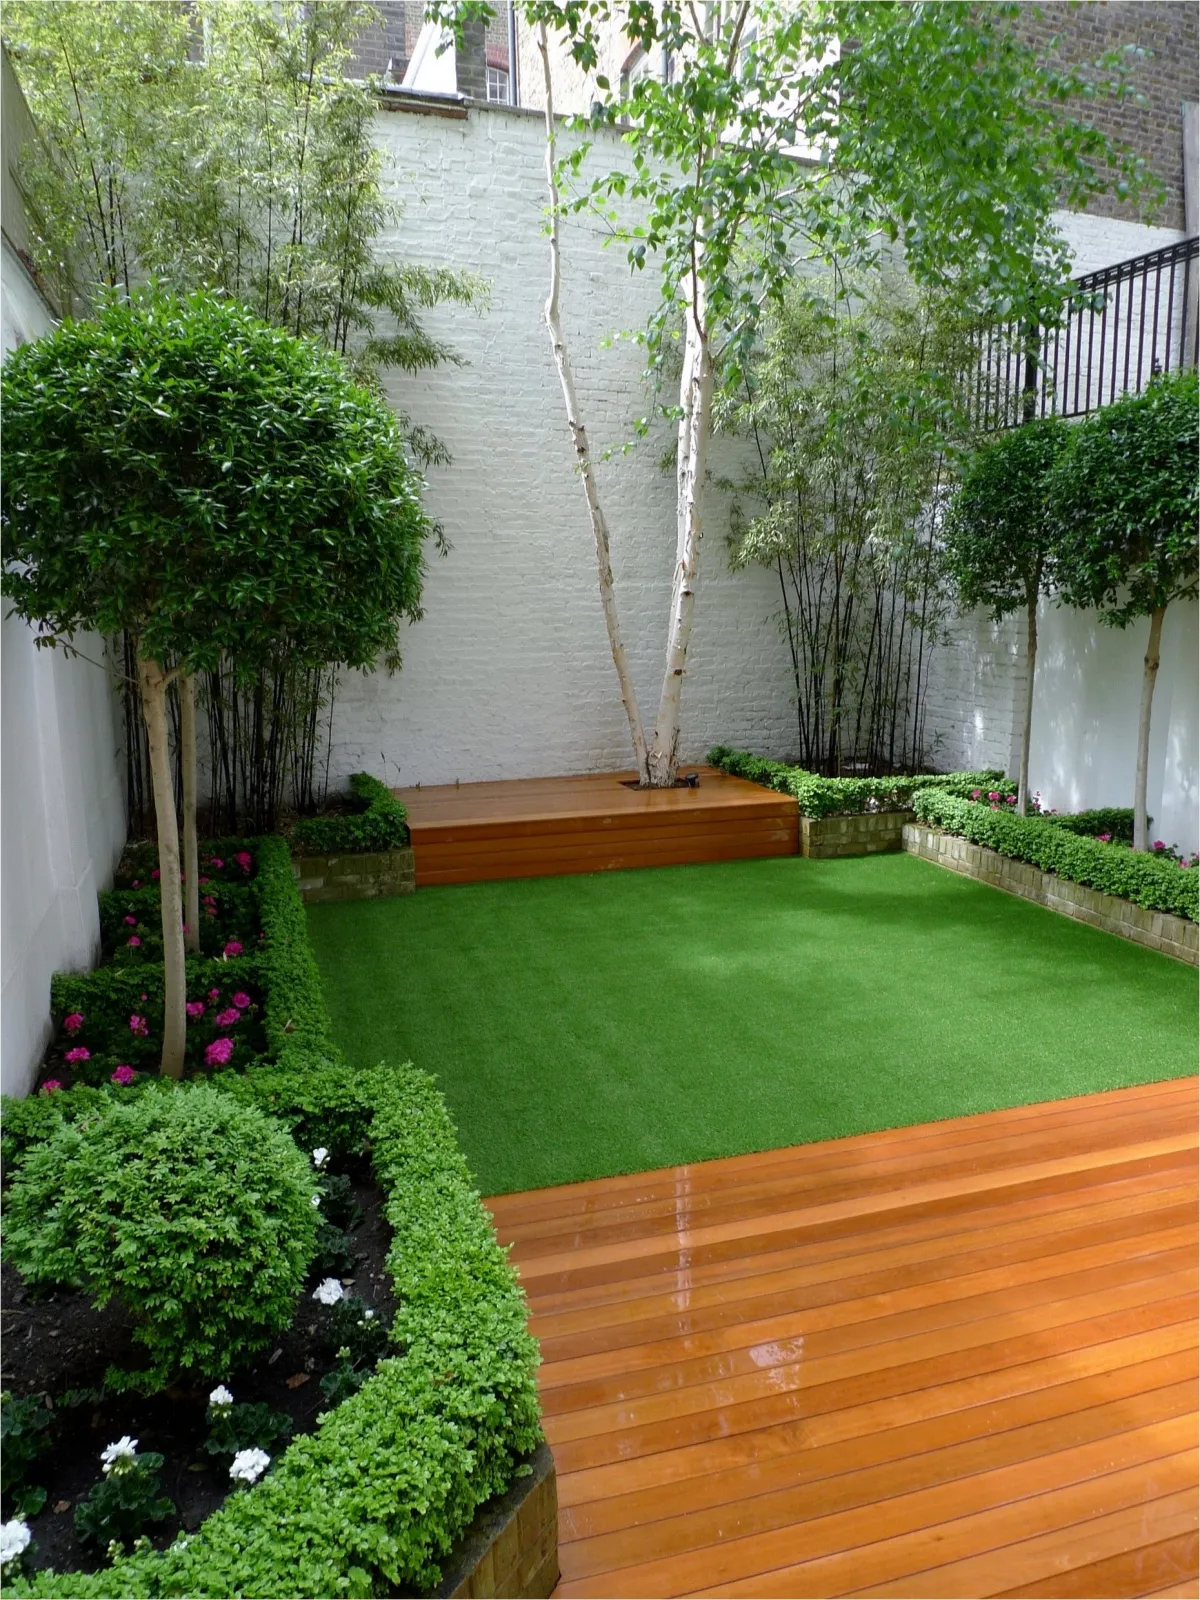 comment organiser un petit jardin cour avec minipelouse vegetation